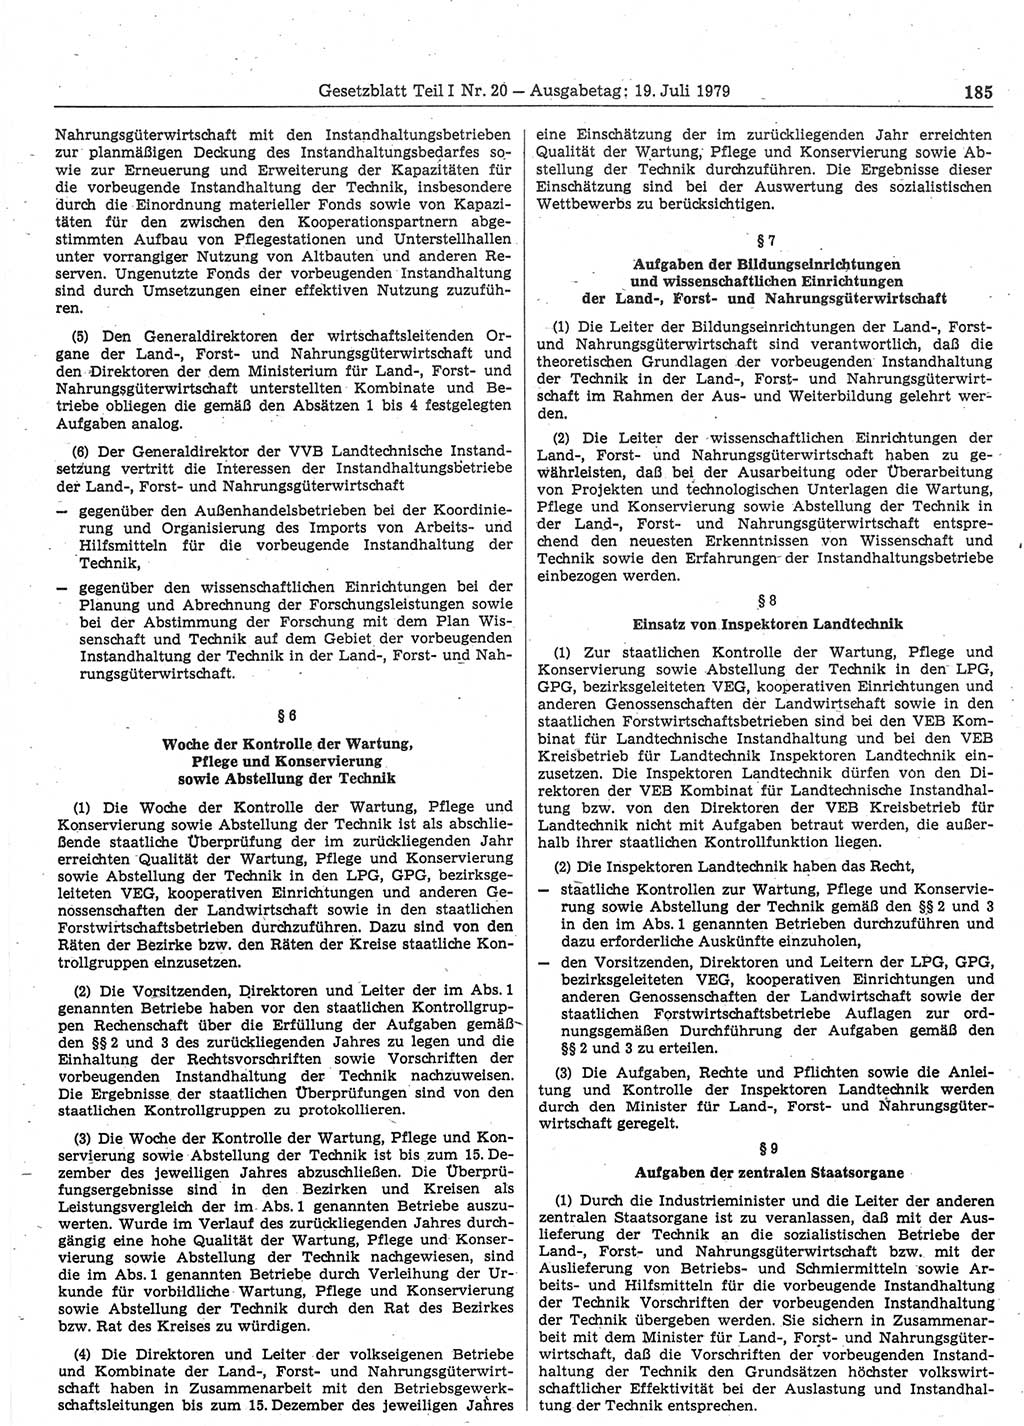 Gesetzblatt (GBl.) der Deutschen Demokratischen Republik (DDR) Teil Ⅰ 1979, Seite 185 (GBl. DDR Ⅰ 1979, S. 185)